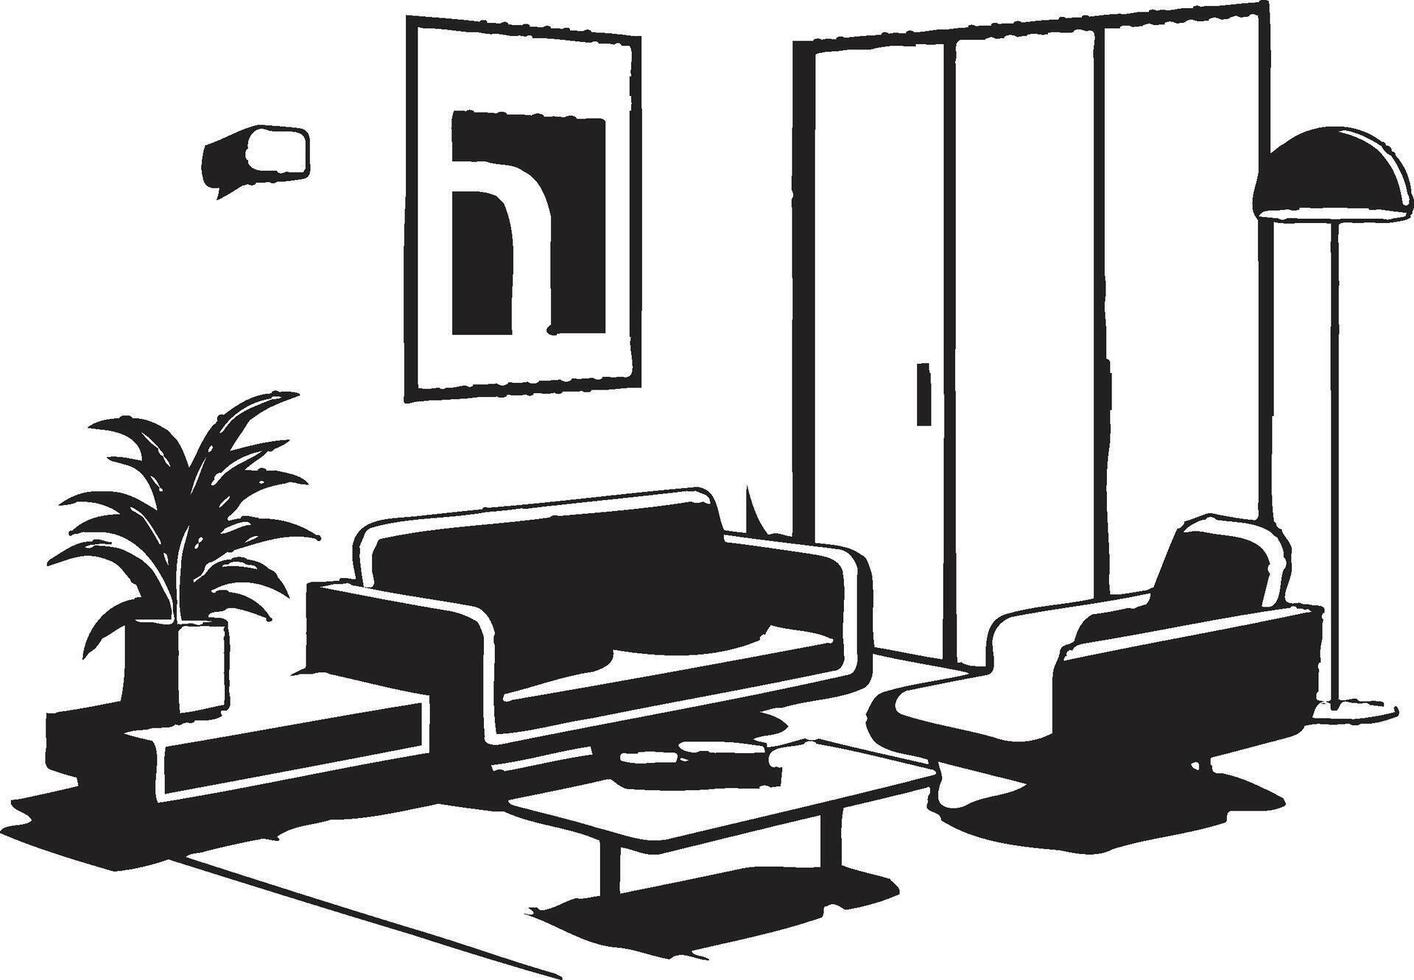 Innere noir glatt schwarz s im Fett gedruckt neu definieren das Eleganz von modern Haus Leben Räume städtisch Komfort Zonen enthüllt ic schwarz s Erfassung das Wesen von modern Leben vektor